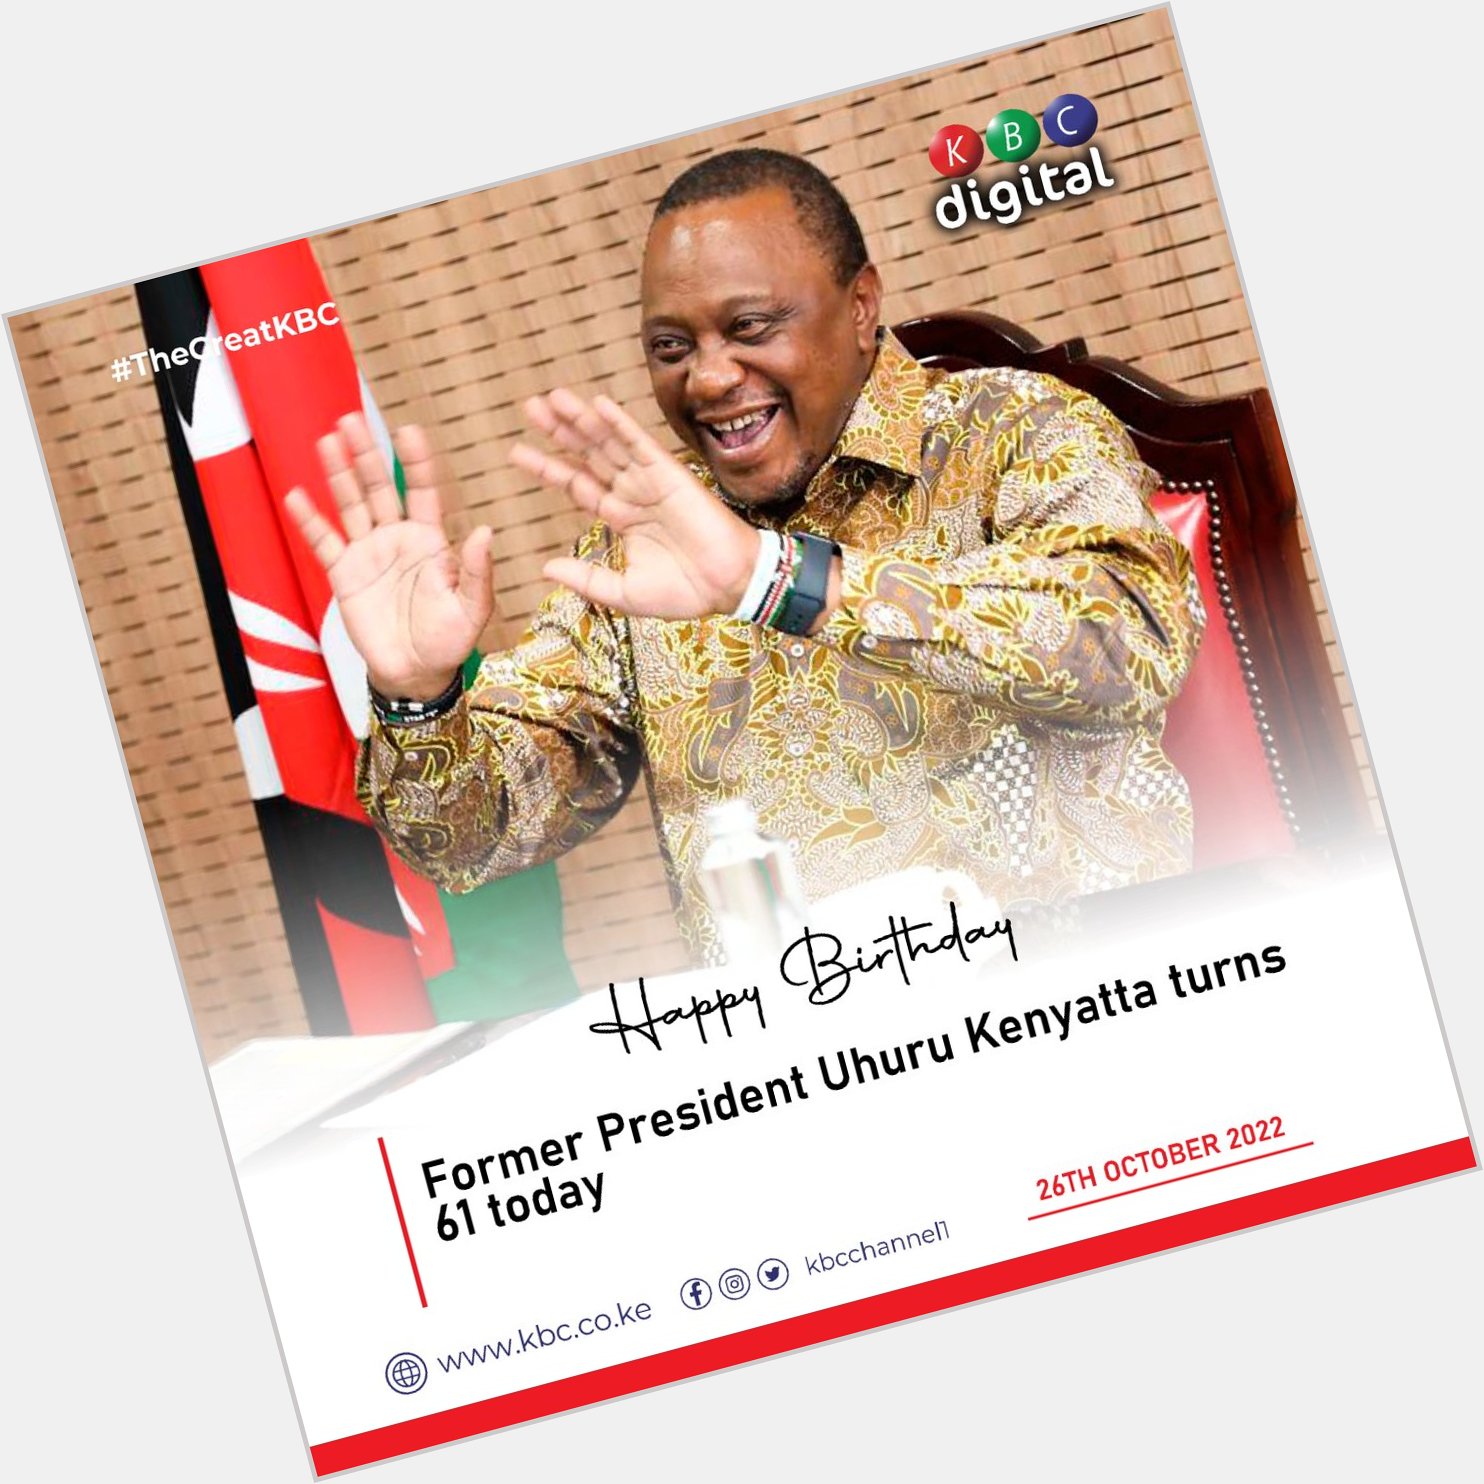 Former President Uhuru Kenyatta at 61 today, Happy Birthday. ^CO 